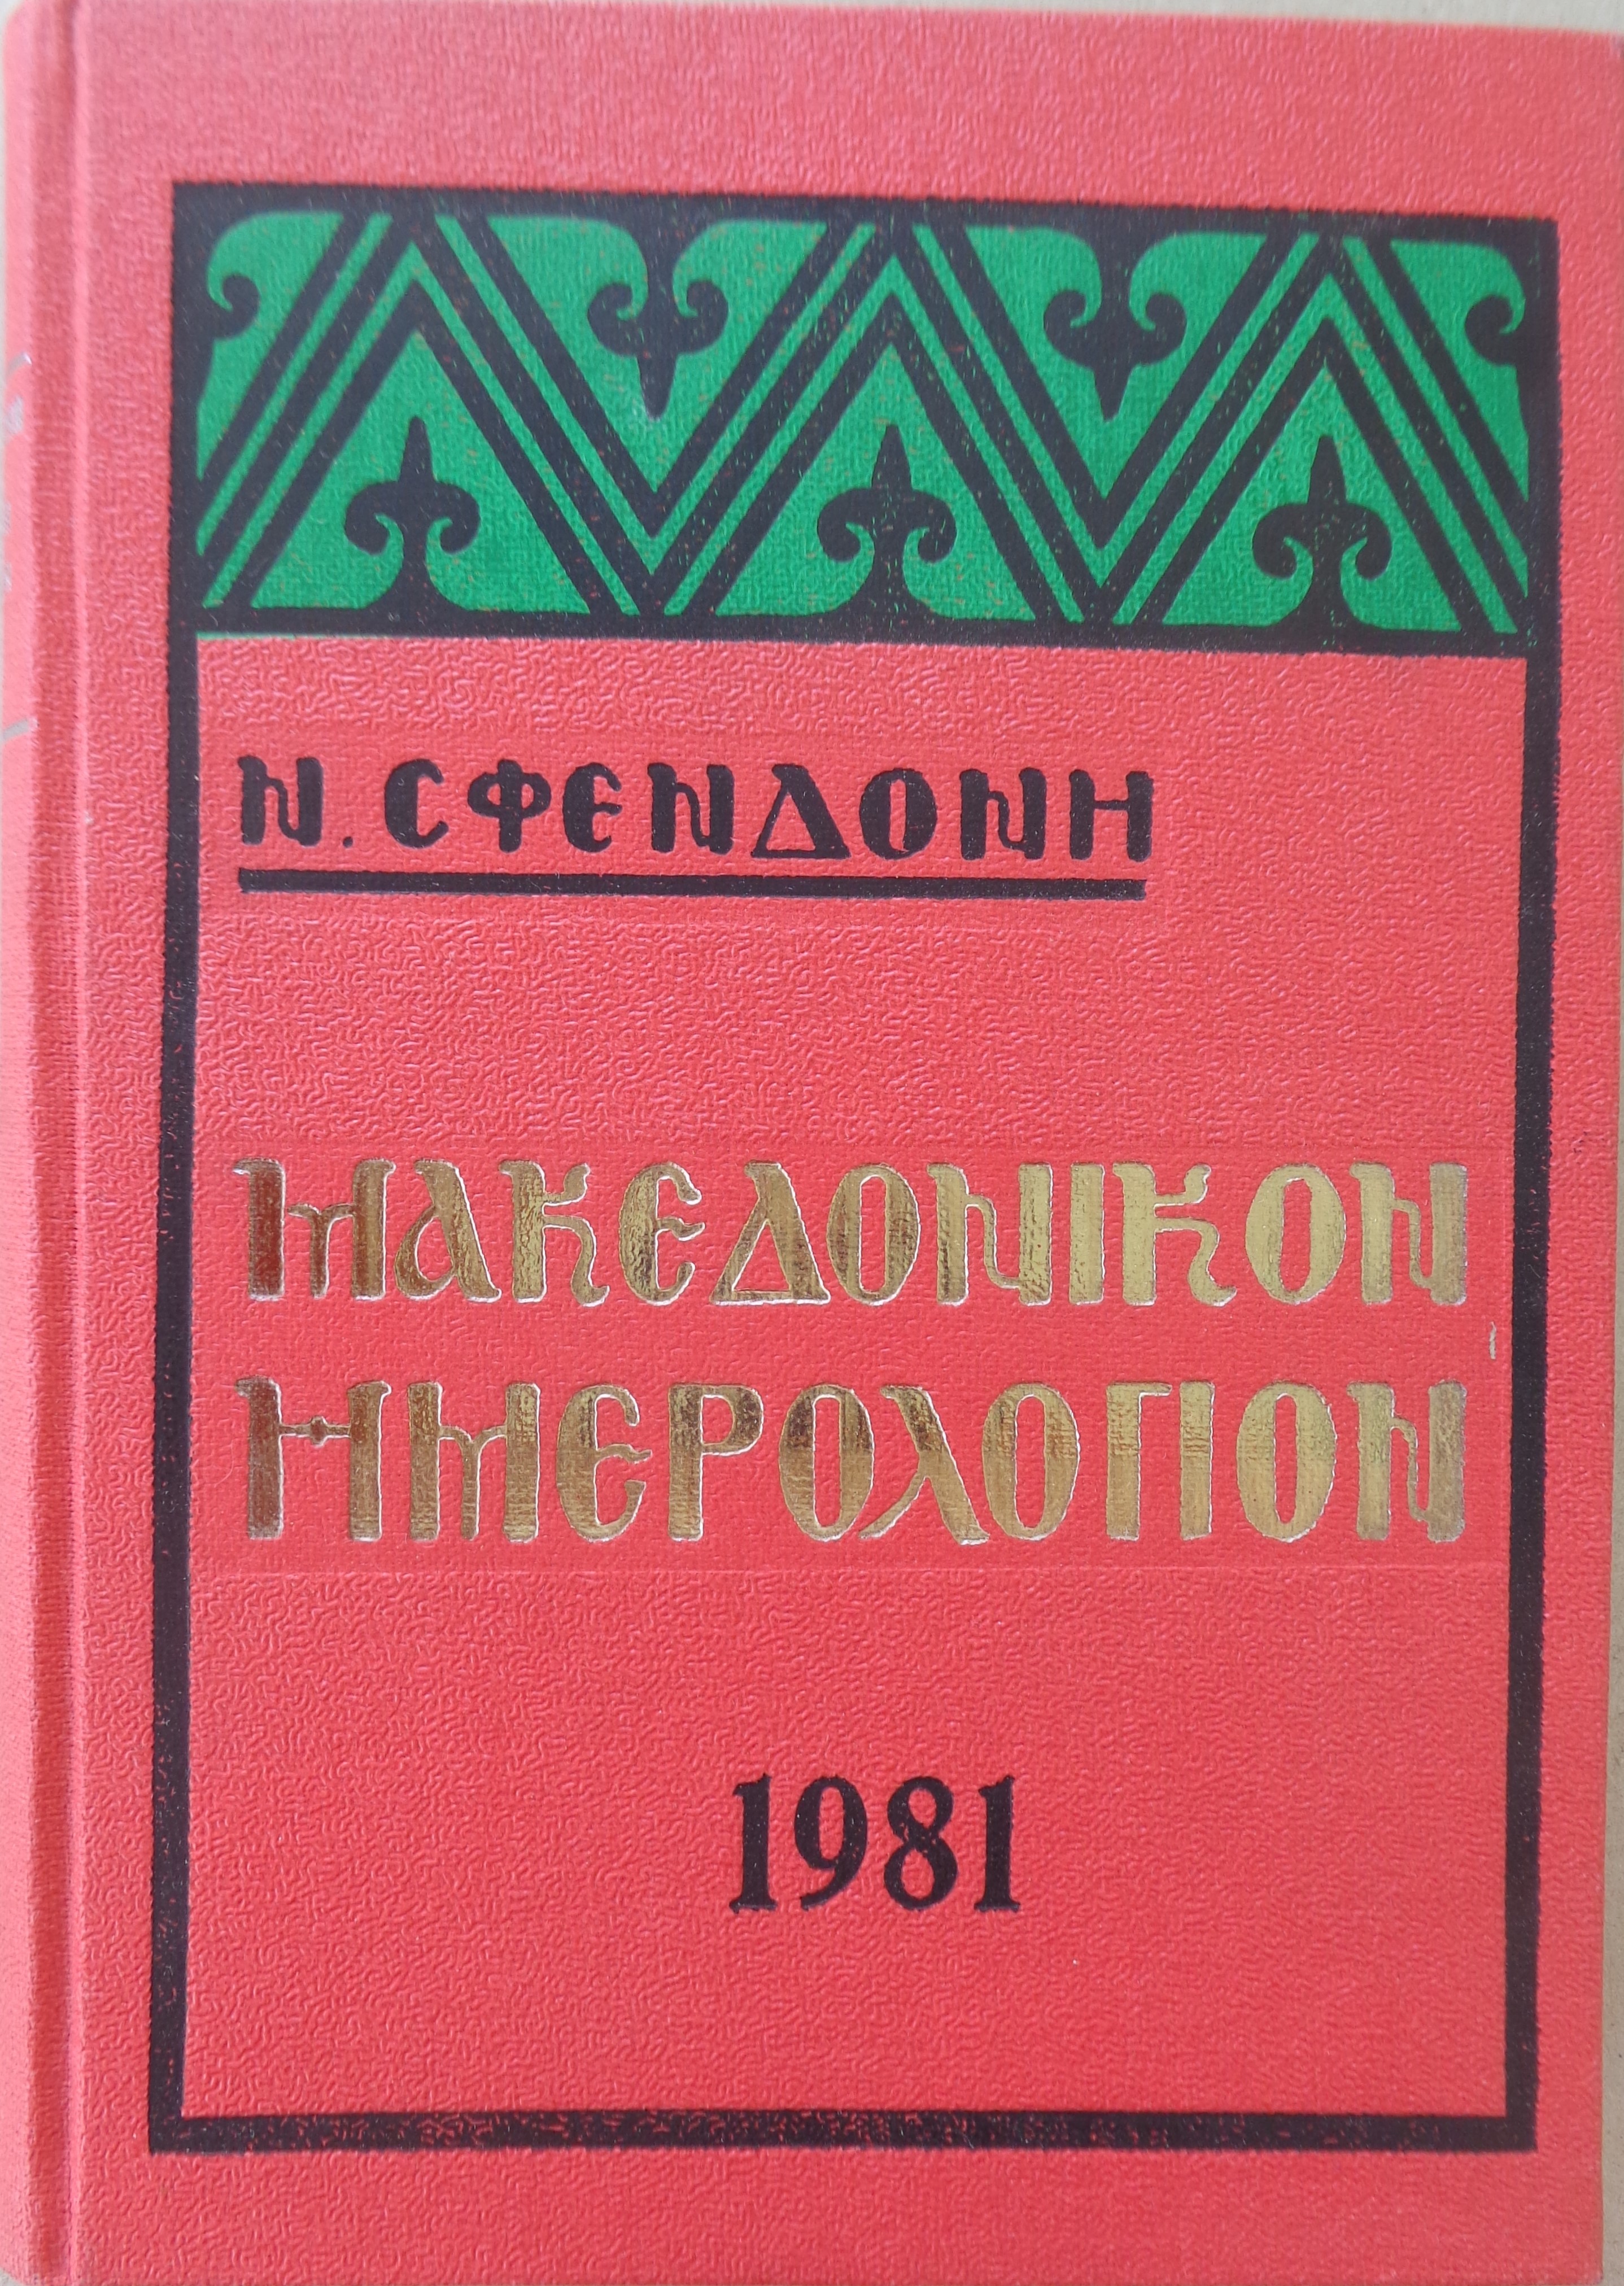 ΜΑΚΕΔΟΝΙΑ ΣΦΕΝΔΟΝΗΣ ΝΙΚΟΛΑΟΣ   Μακεδονικο Ημερολογιο 1981 